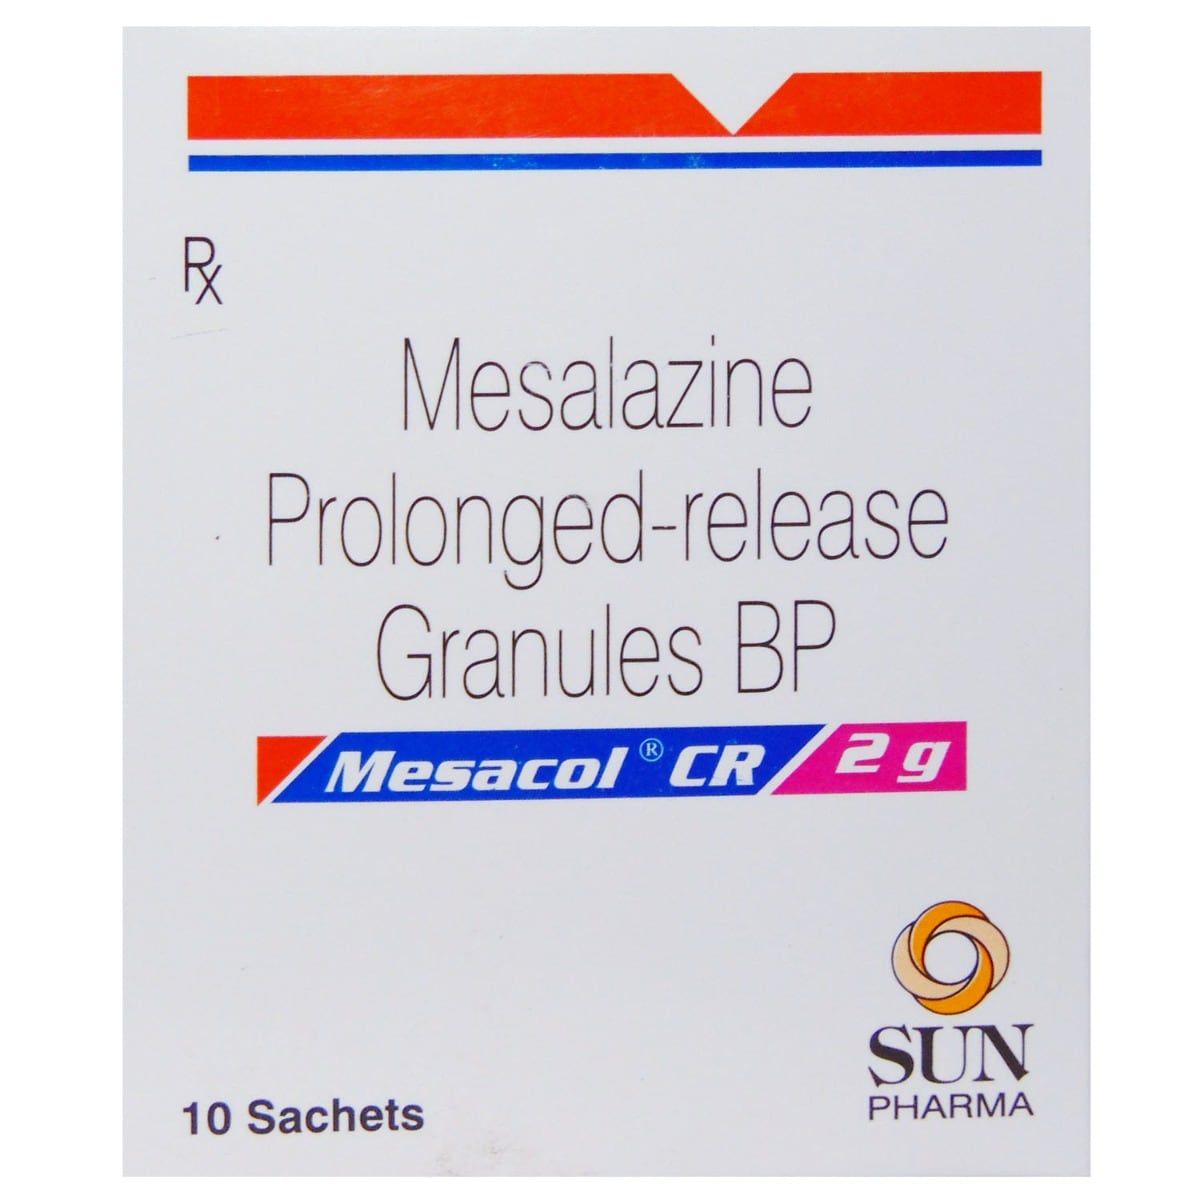 Buy Mesacol CR 2gm Granules Online